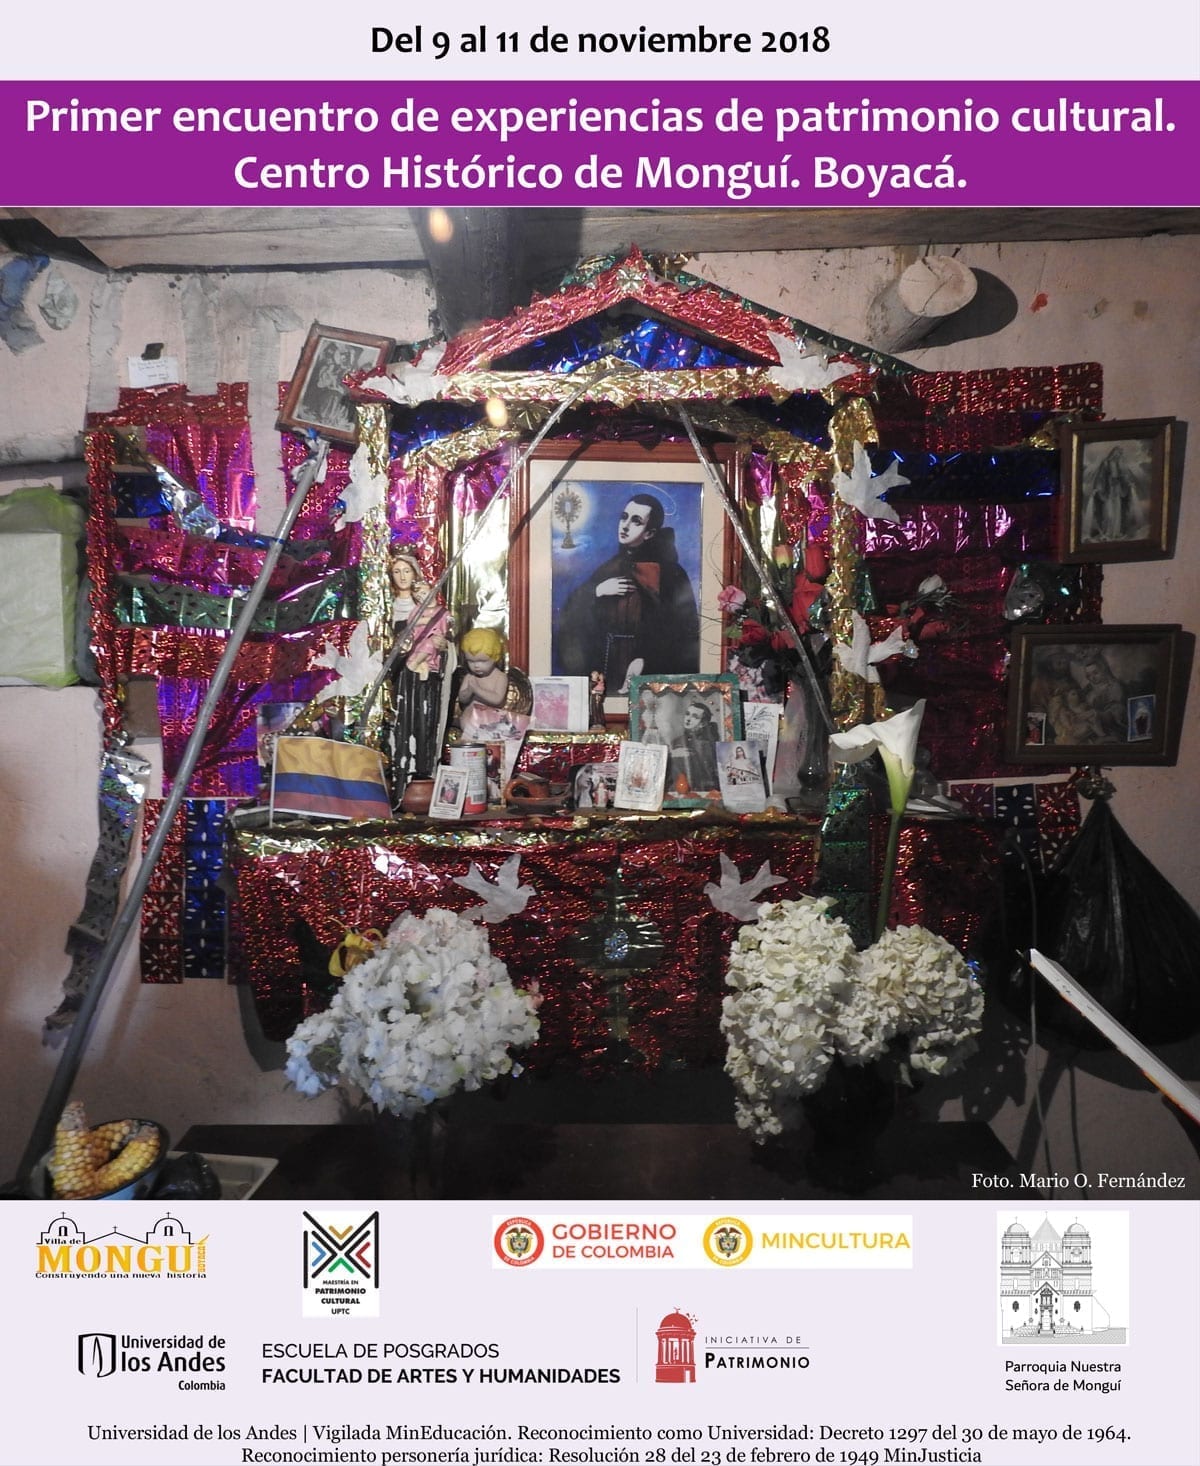 Del 9 al 11 de noviembre del 2018 se desarrollará el Primer encuentro de experiencias de patrimonio cultural en el centro histórico de Monguí.